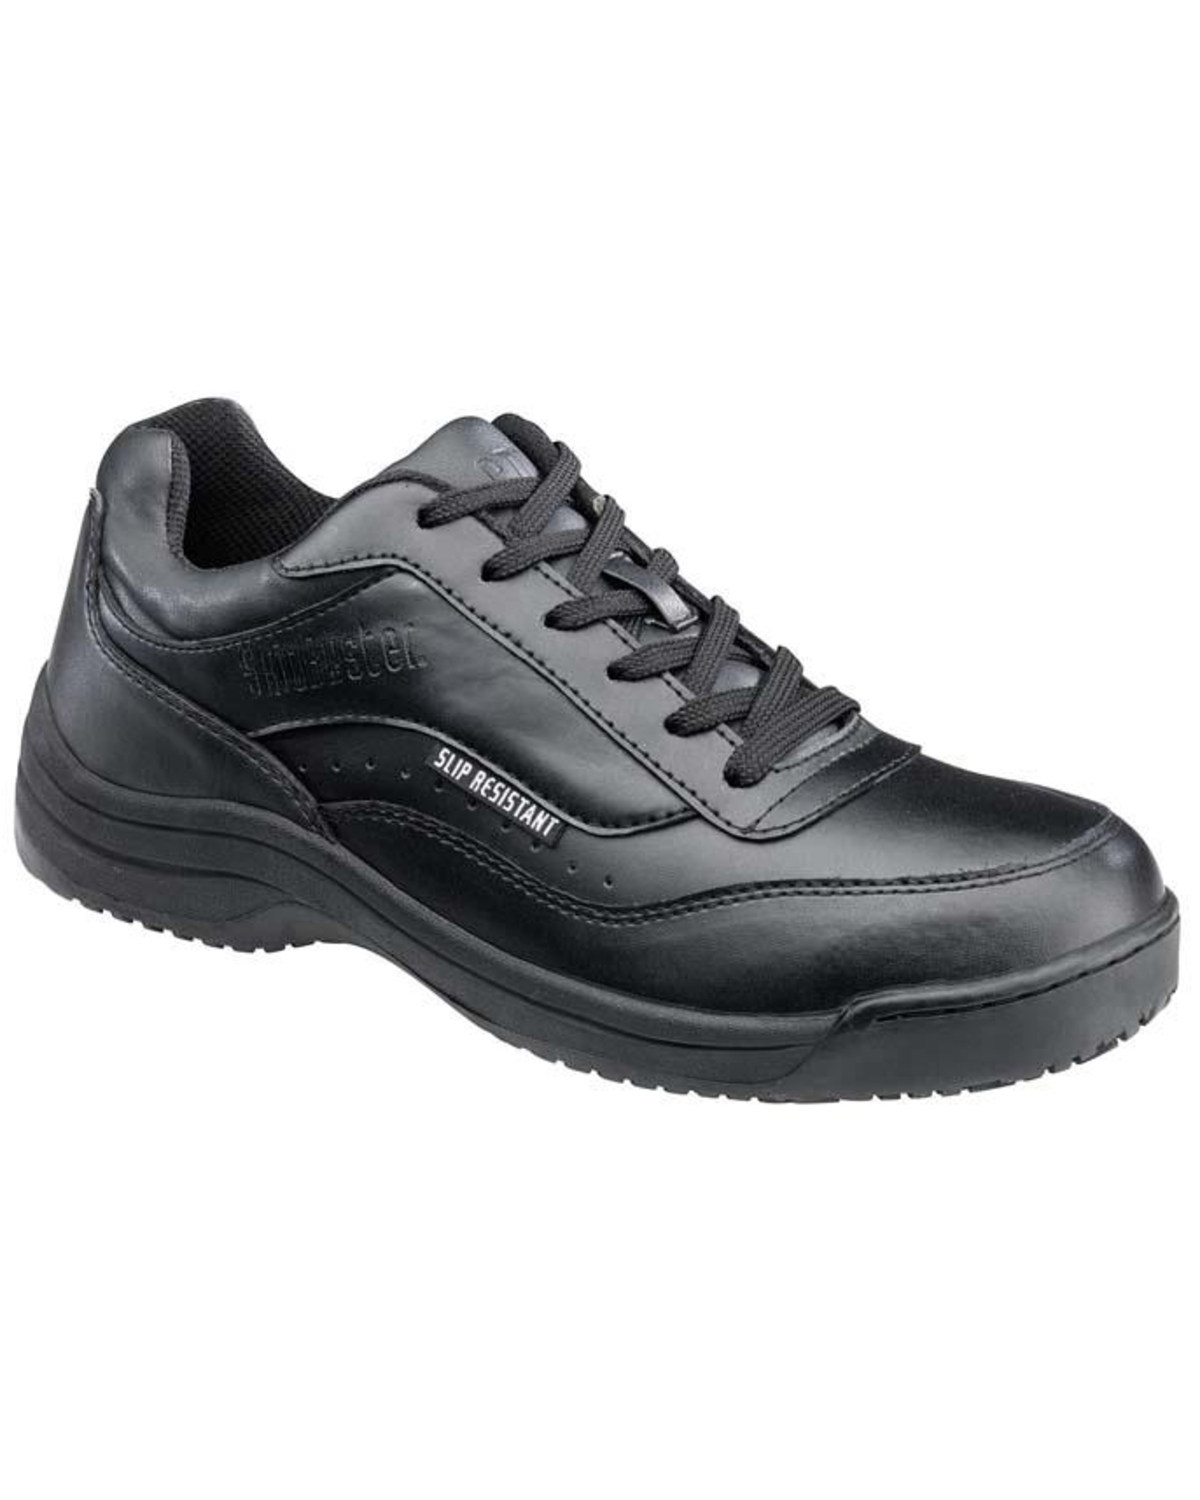 slip resistant shoes black